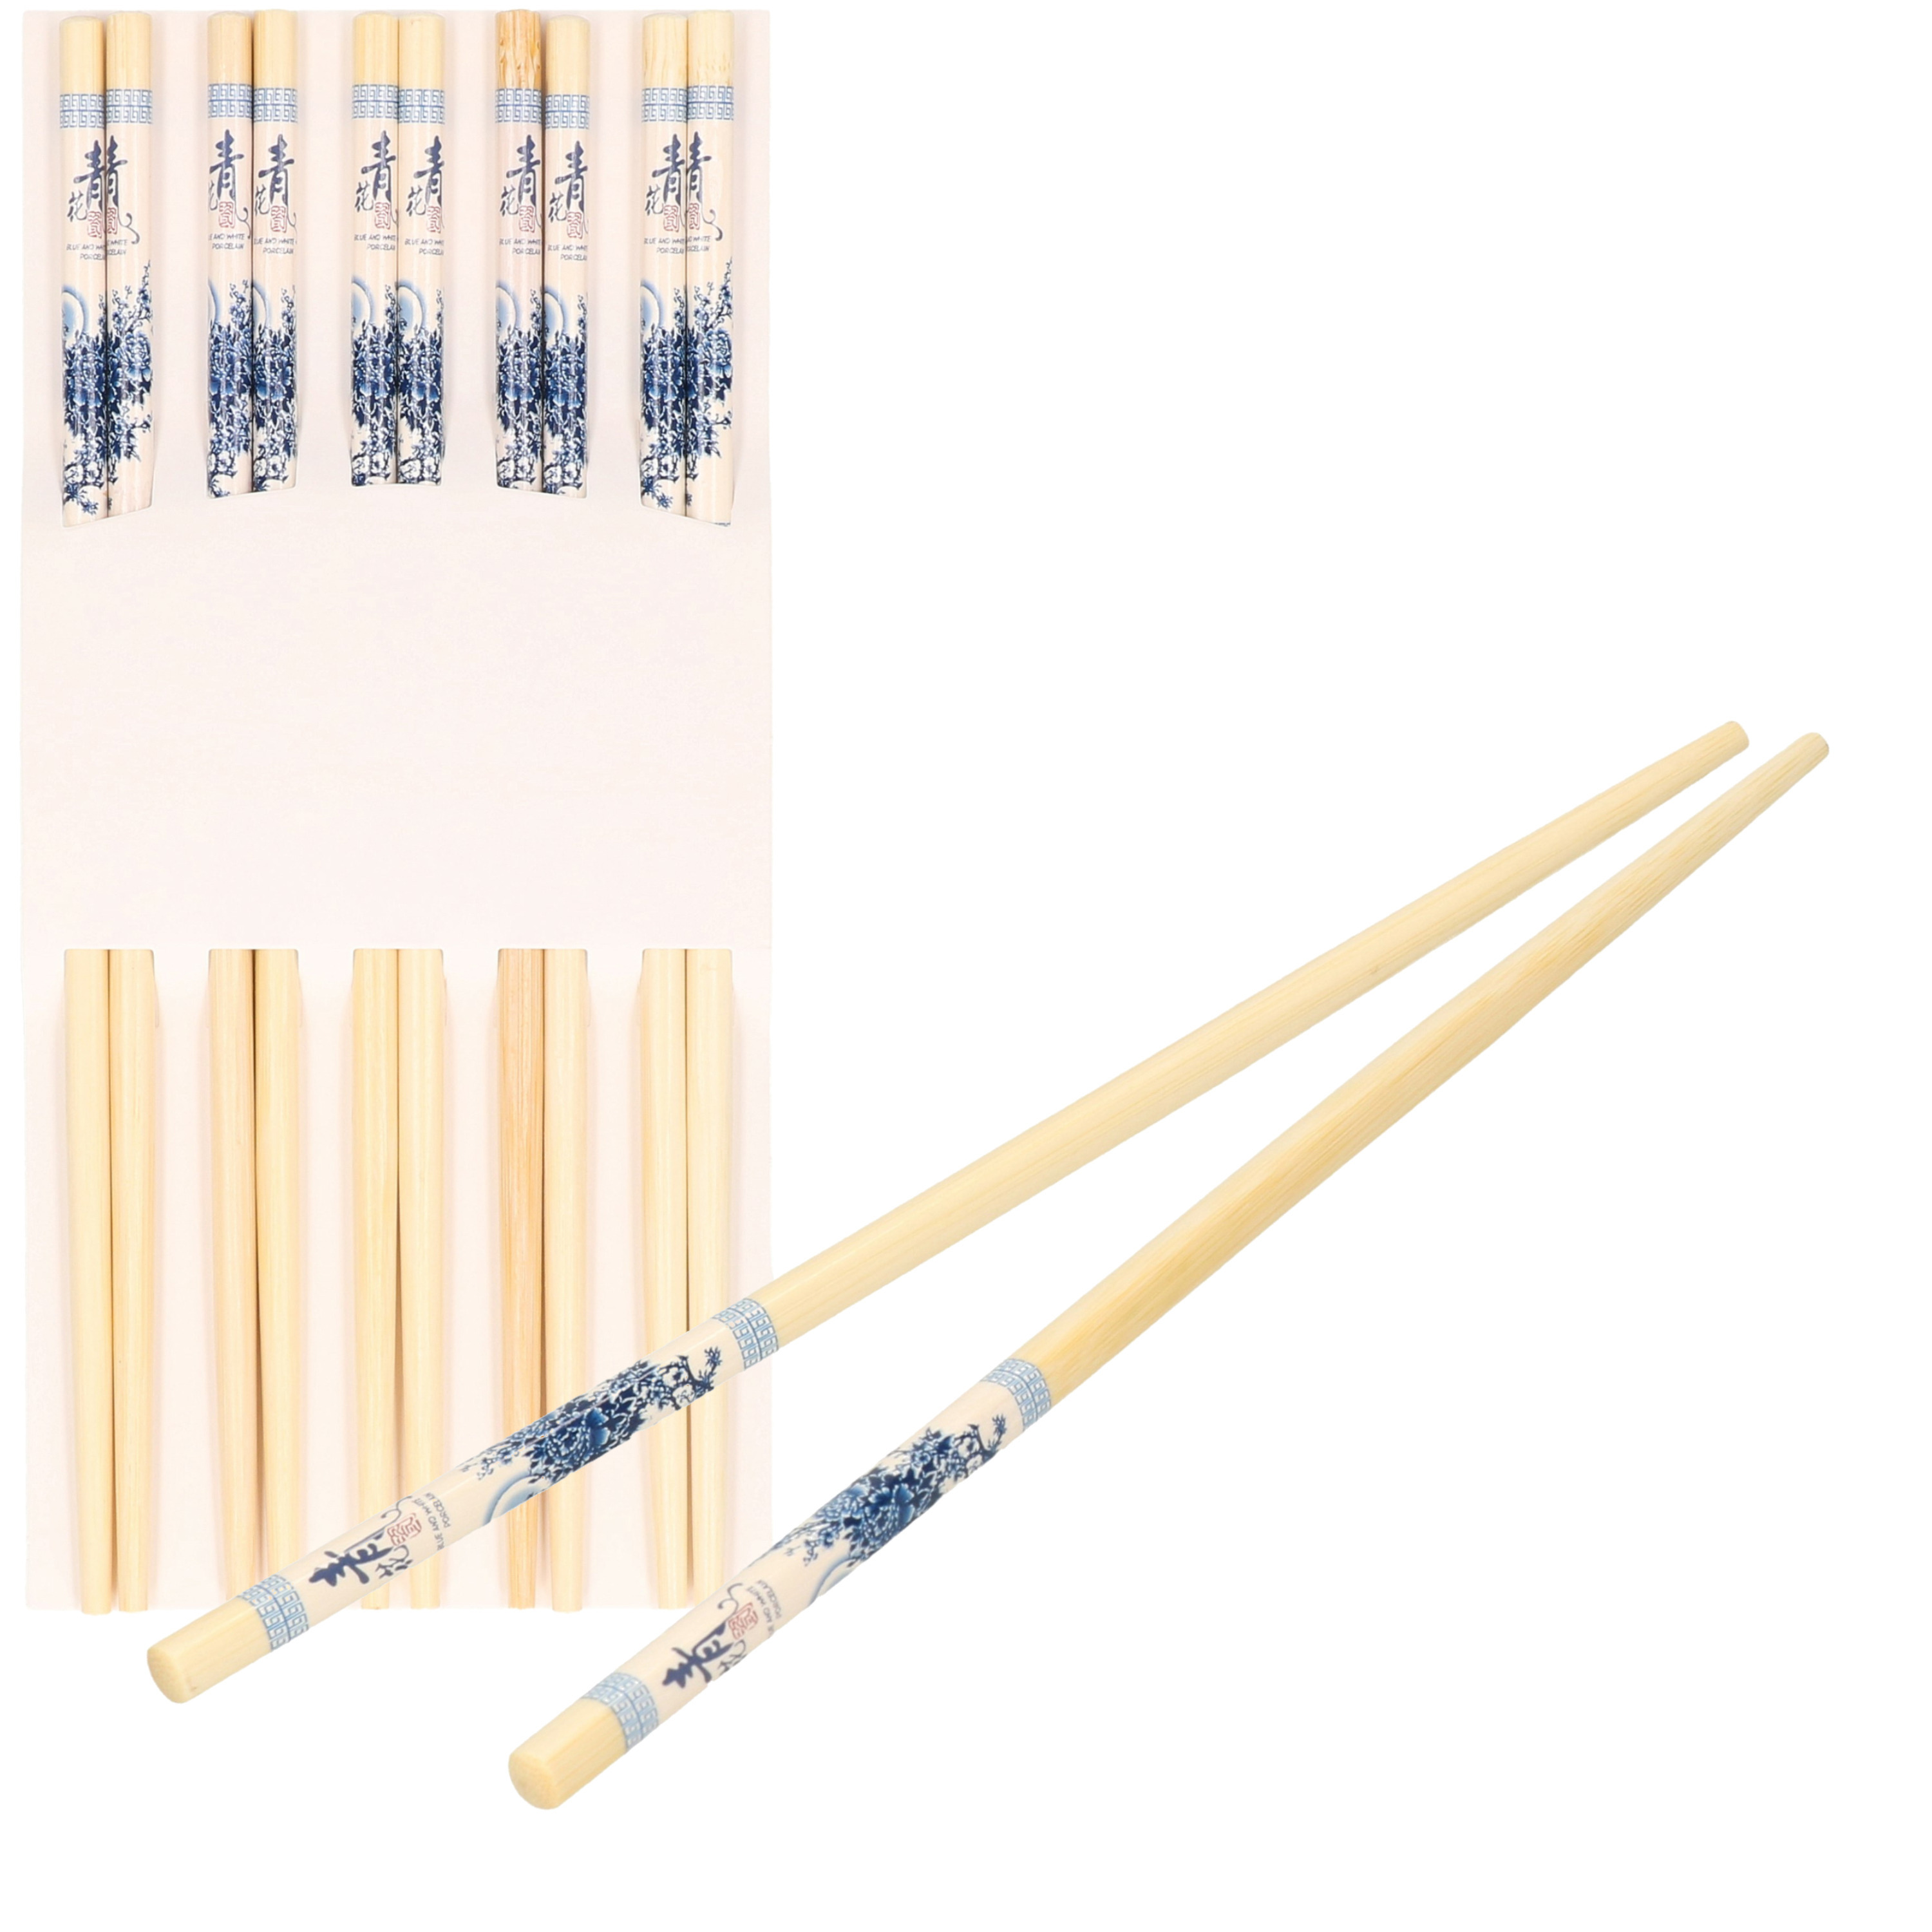 Sushi eetstokjes 5x setjes bamboe hout blauwe print 24 cm